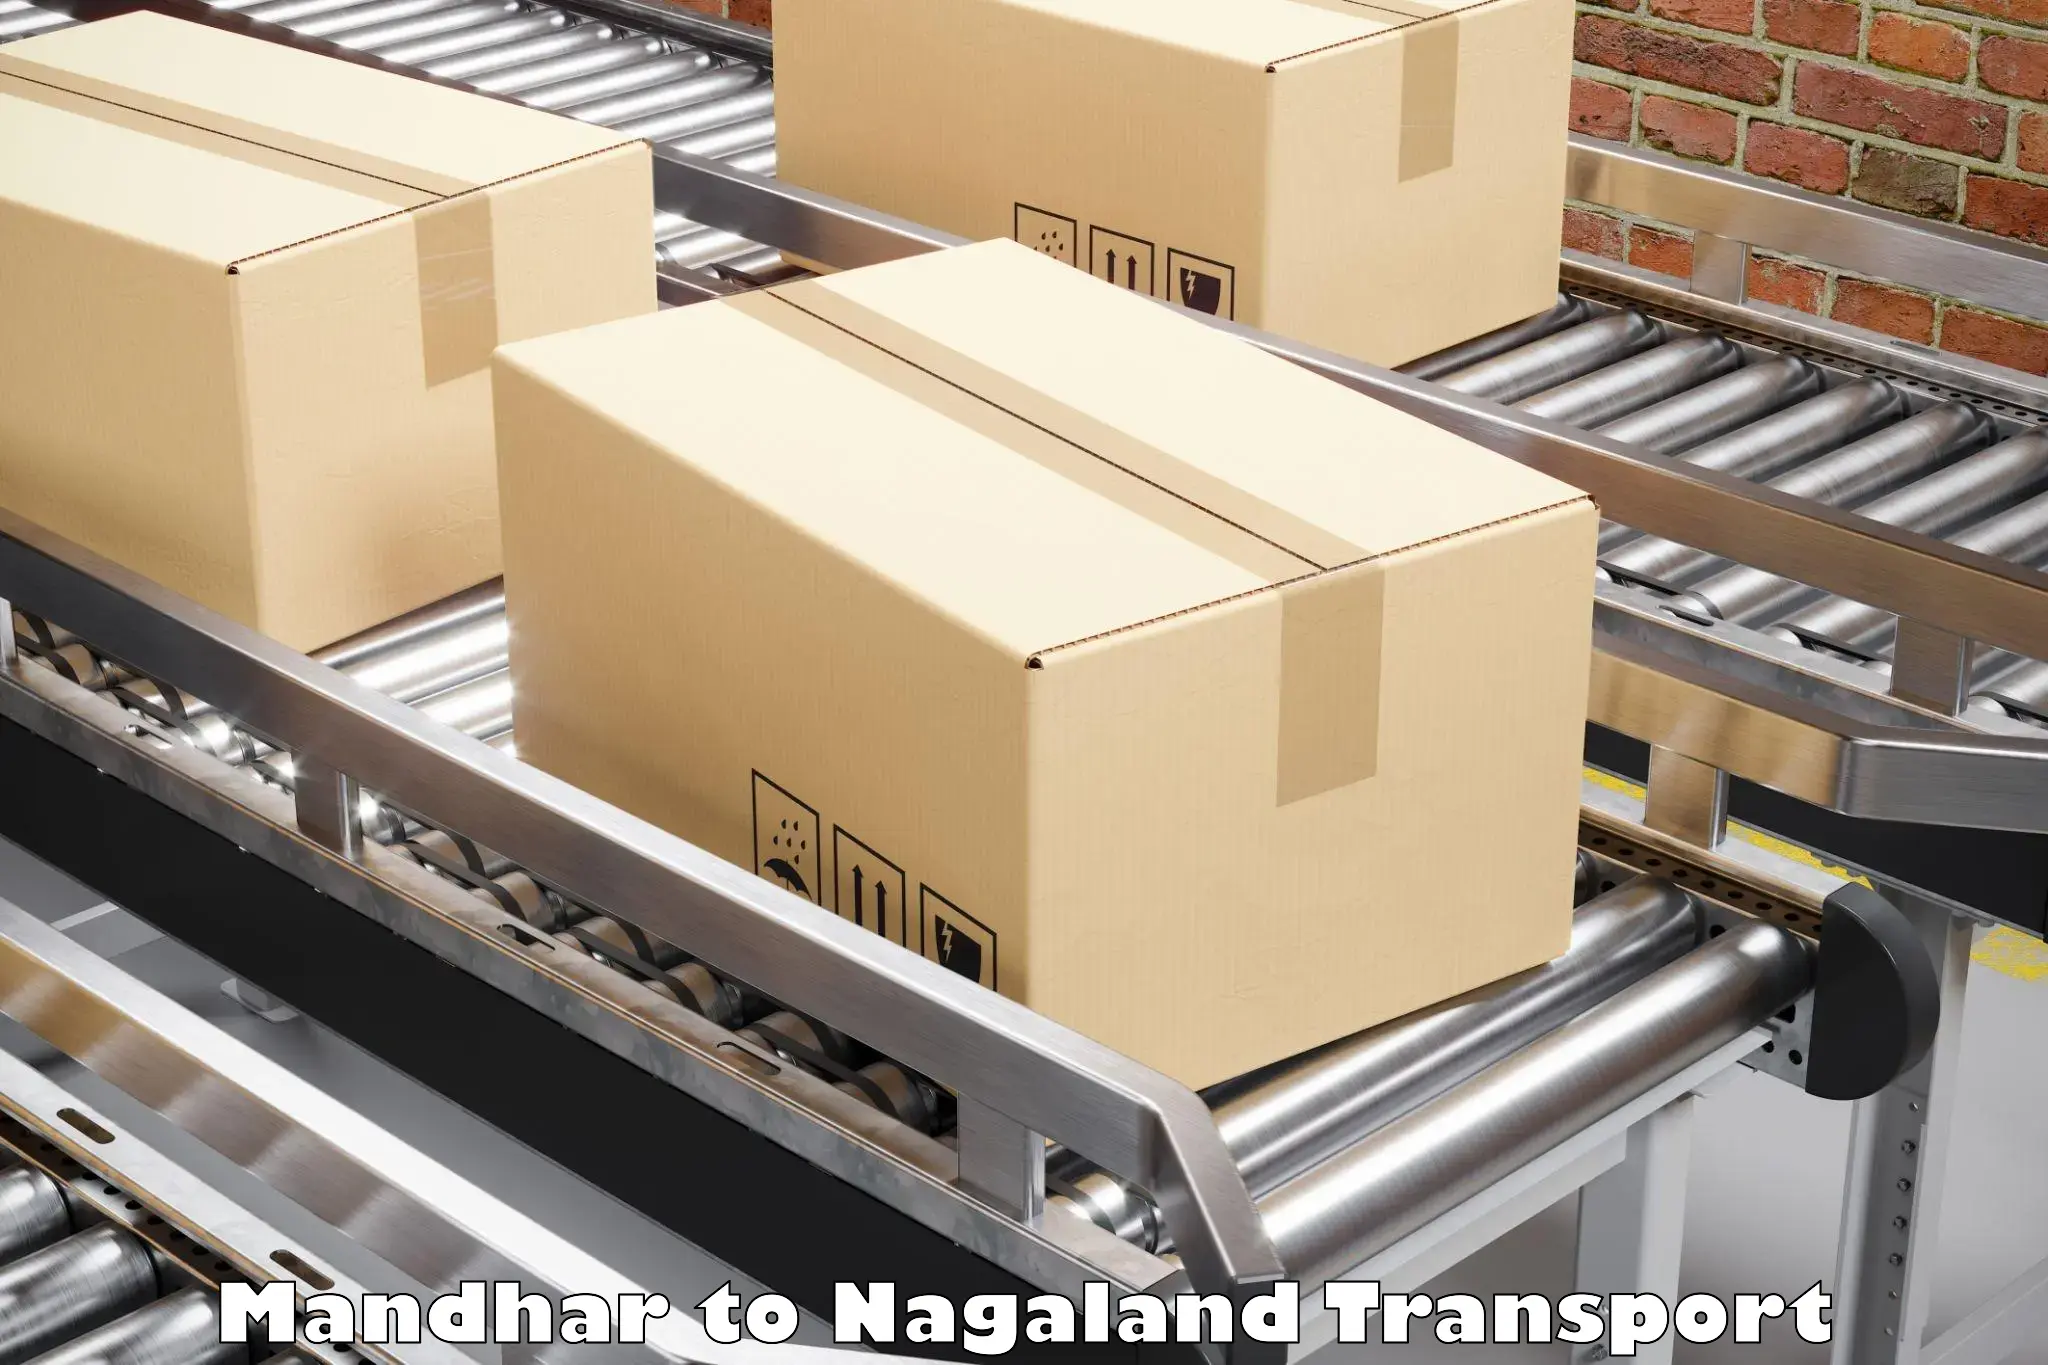 Interstate transport services Mandhar to Nagaland